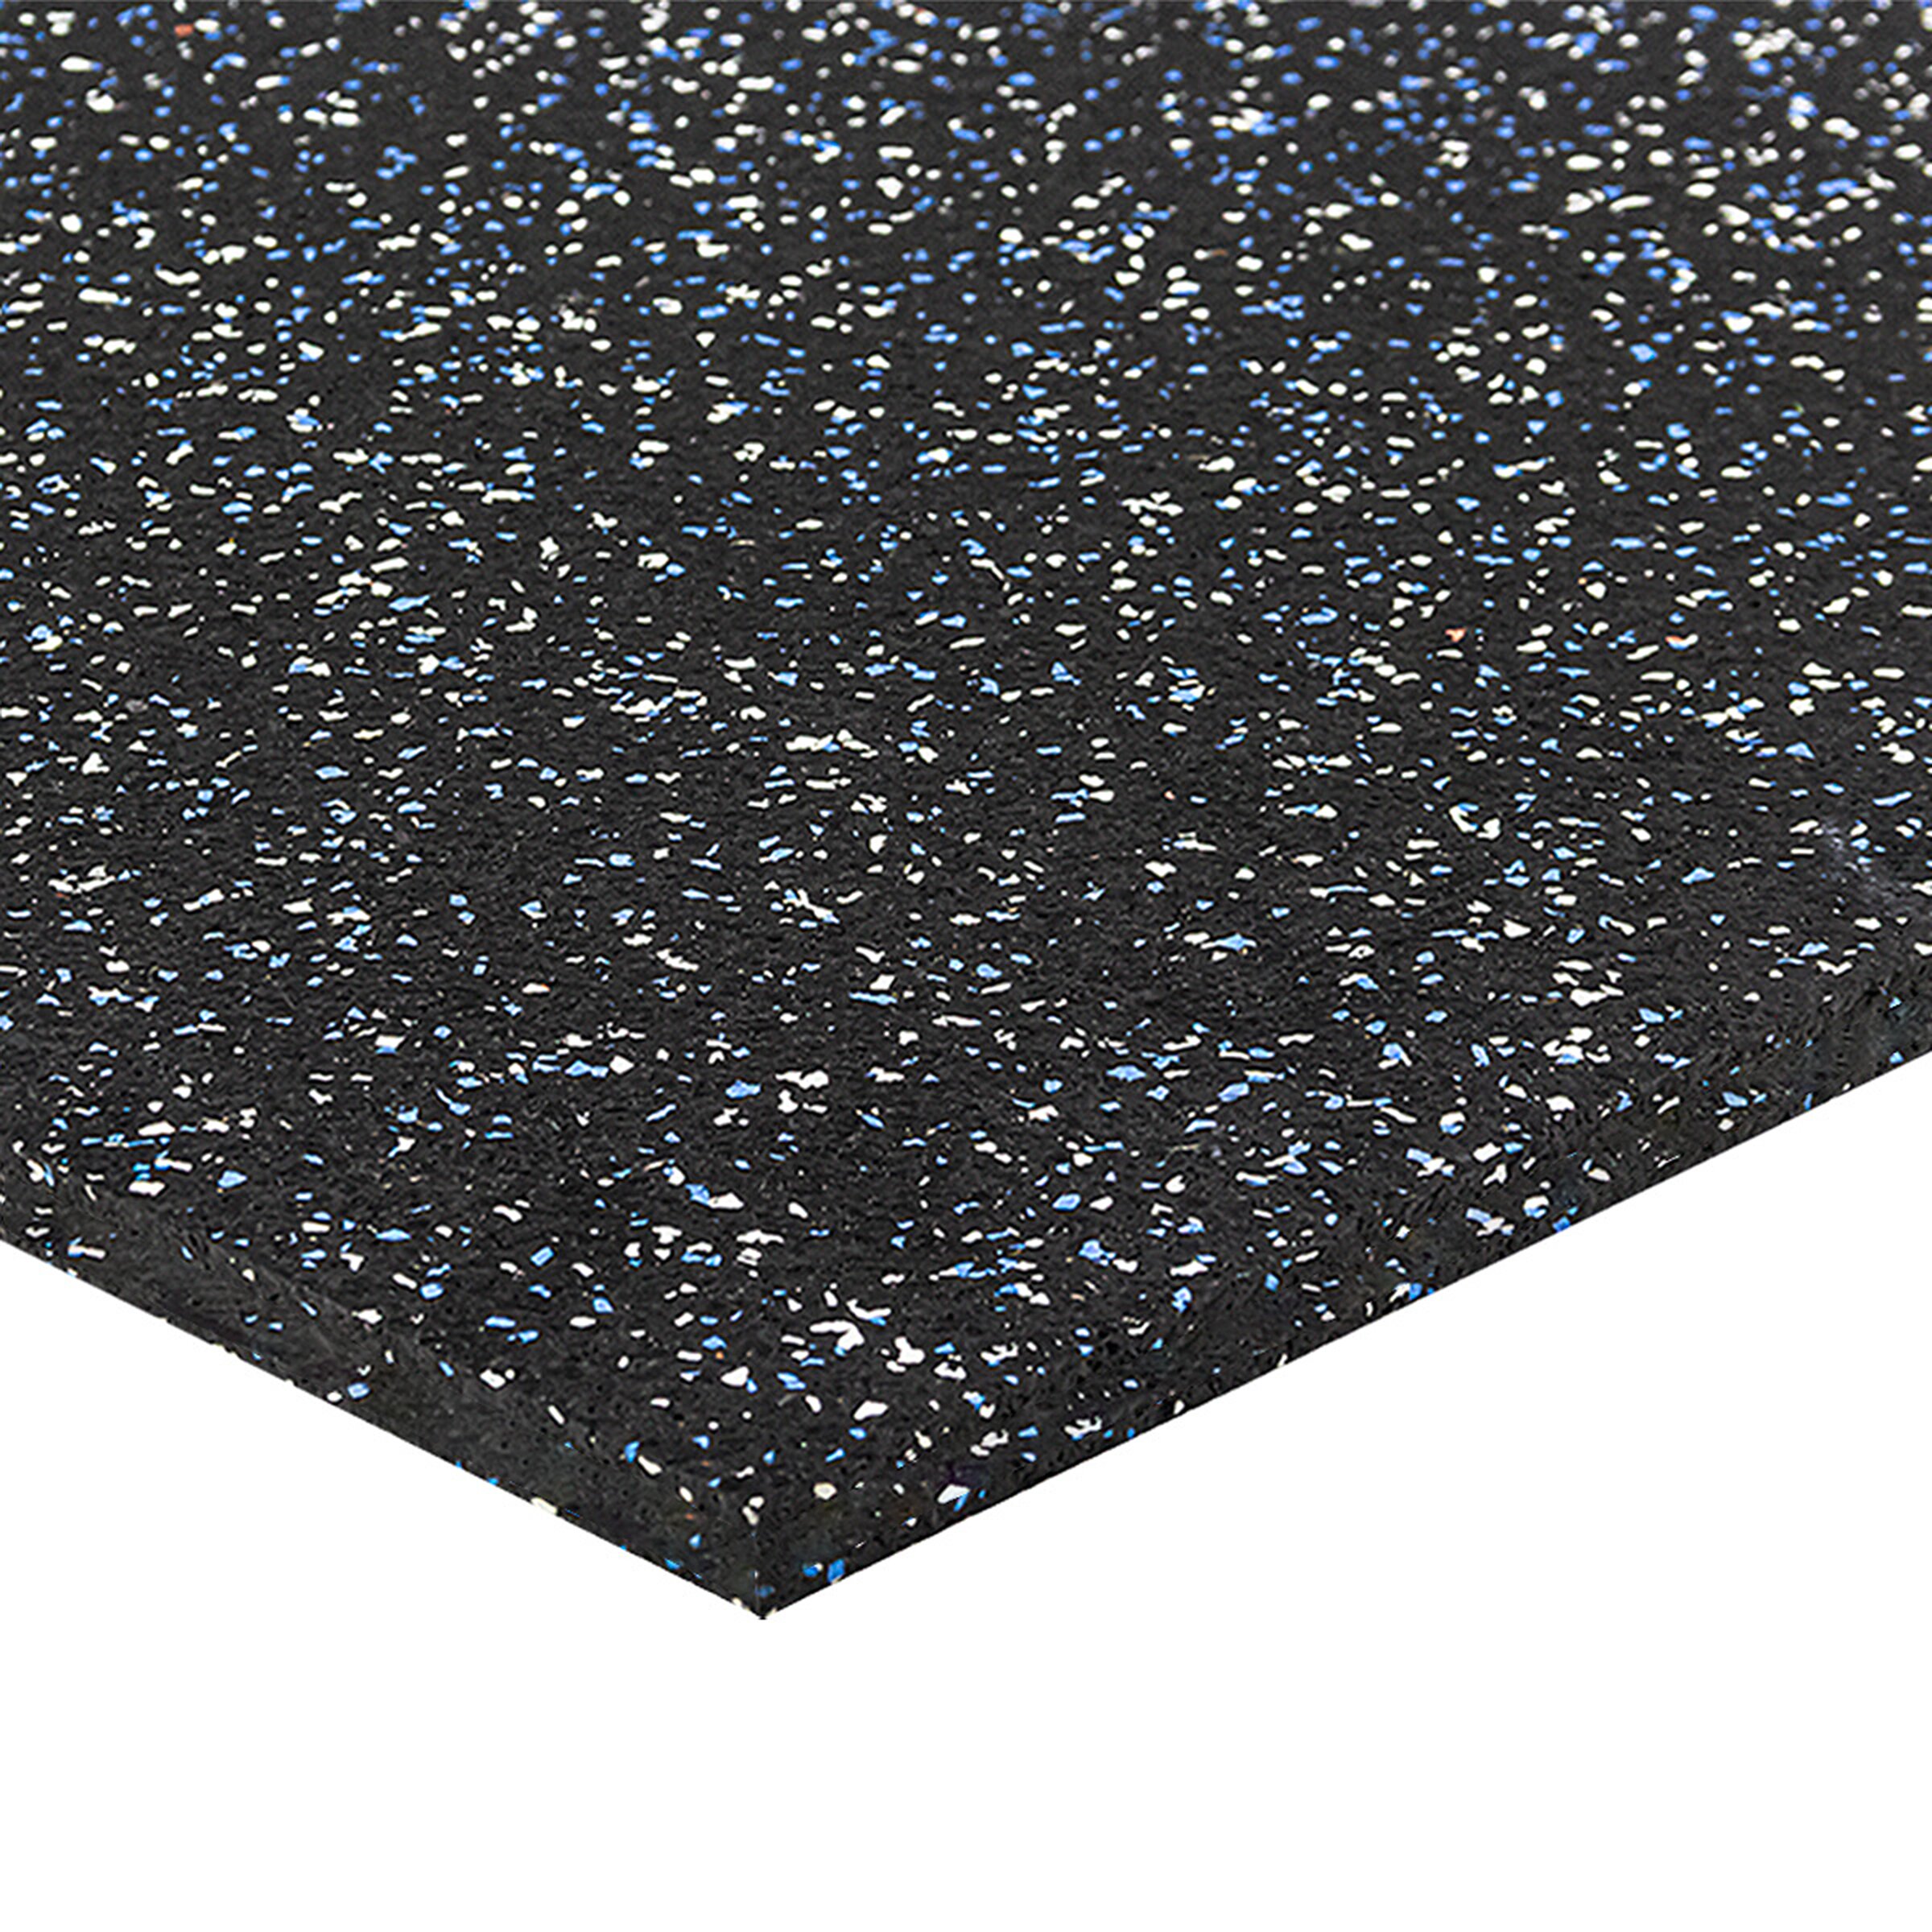 Čierno-bielo-modrá podlahová guma (puzzle - roh) FLOMA FitFlo SF1050 - dĺžka 100 cm, šírka 100 cm, výška 1,6 cm